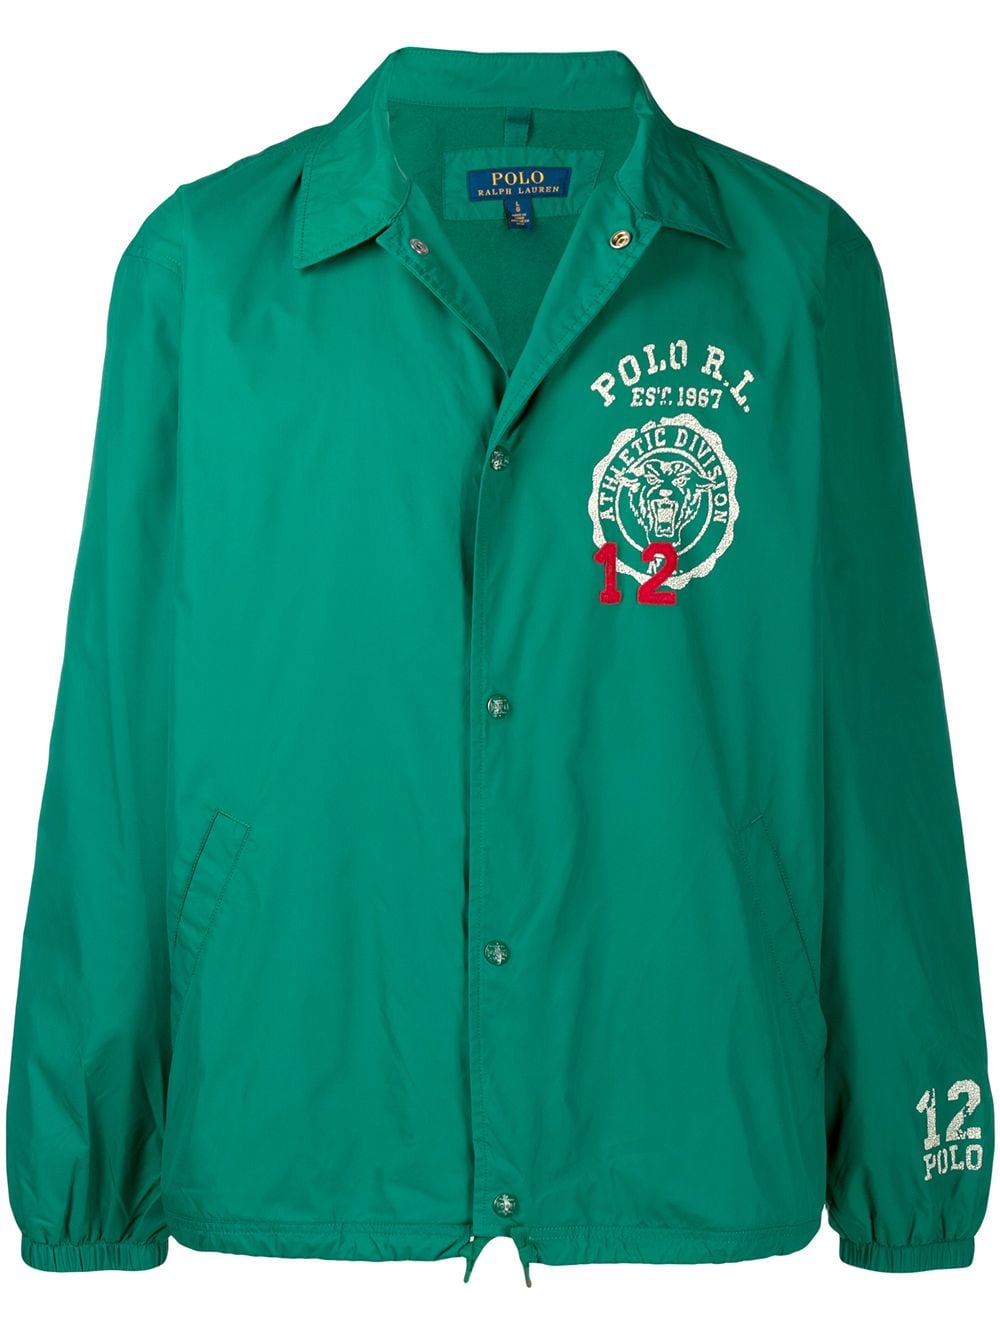 фото Polo Ralph Lauren легкая куртка с логотипом